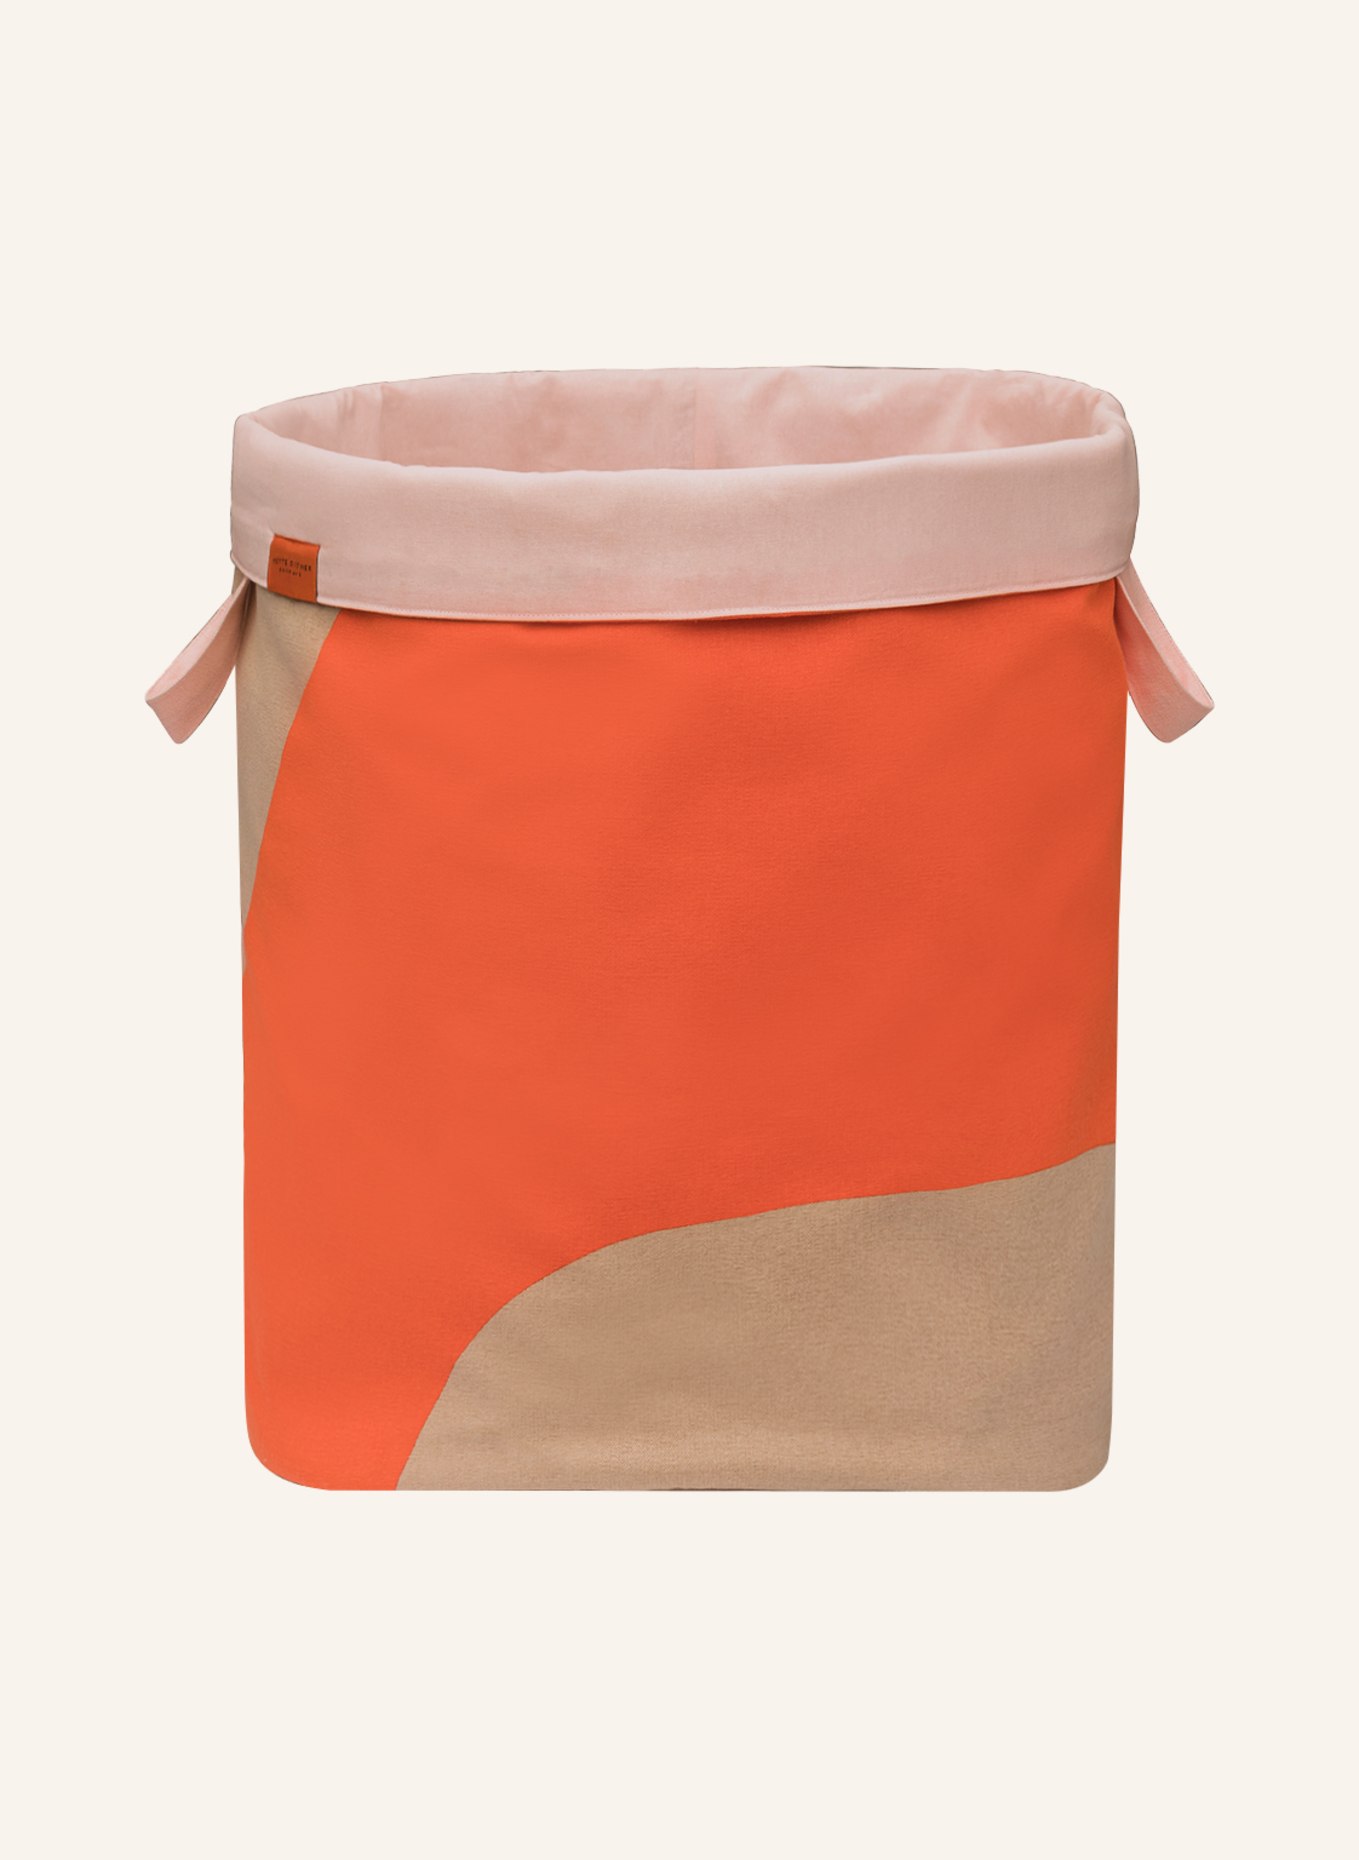 METTE DITMER Laundry basket NOVA ARTE, Color: ORANGE/ BEIGE (Image 2)